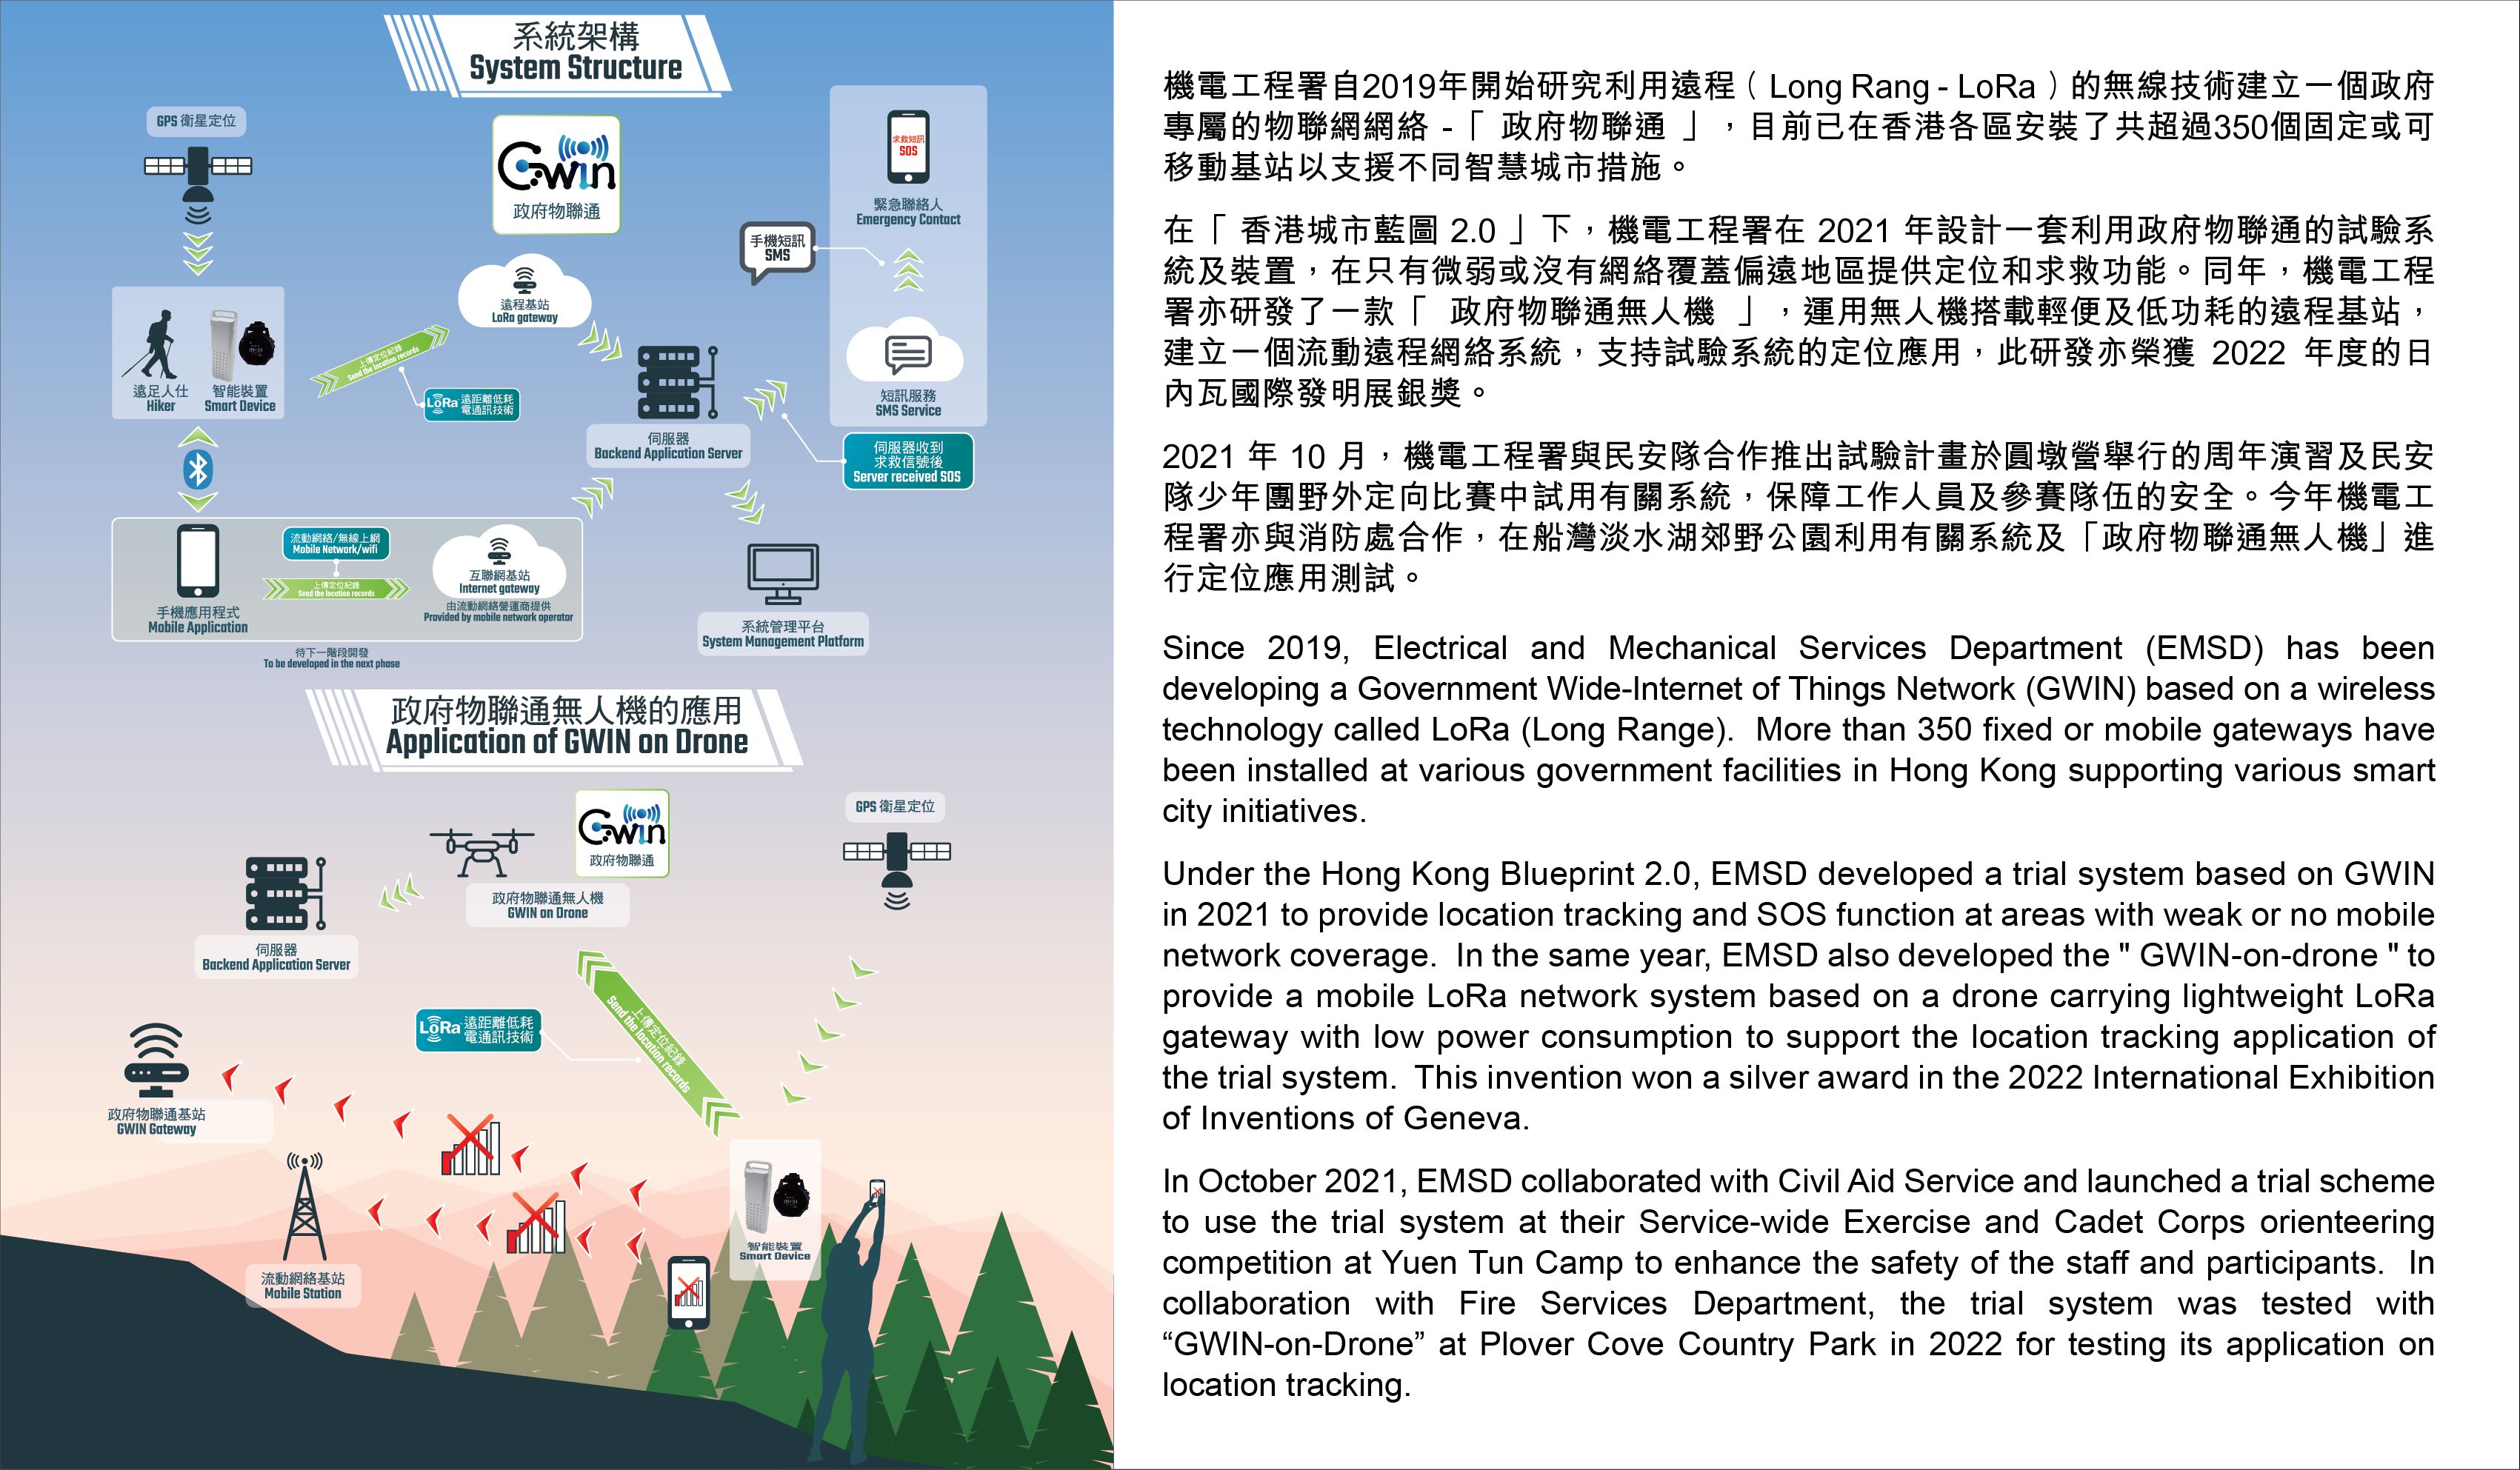 行山安全系統 - 機電工程署自2019年開始研究利用遠程 ( Long Rang - LoRa ) 的無線技術建立一個政府專屬的物聯網網絡 -「 政府物聯通 」，目前已在香港各區安裝了共超過350個固定或可移動基站以支援不同智慧城市措施。在「 香港城市藍圖 2.0 」下，機電工程署在 2021 年設計一套利用政府物聯通的試驗系統及裝置，在只有微弱或沒有網絡覆蓋偏遠地區提供定位和求救功能。同年，機電工程署亦研發了一款「 政府物聯通無人機 」，運用無人機搭載輕便及低功耗的遠程基站，建立一個流動遠程網絡系統，支持試驗系統的定位應用，此研發亦榮獲 2022 年度的日內瓦國際發明展銀獎。2021 年 10 月，機電工程署與民安隊合作推出試驗計畫於圓墩營舉行的周年演習及民安隊少年團野外定向比賽中試用有關系統，保障工作人員及參賽隊伍的安全。今年機電工程署亦與消防處合作，在船灣淡水湖郊野公園利用有關系統及「政府物聯通無人機」進行定位應用測試。